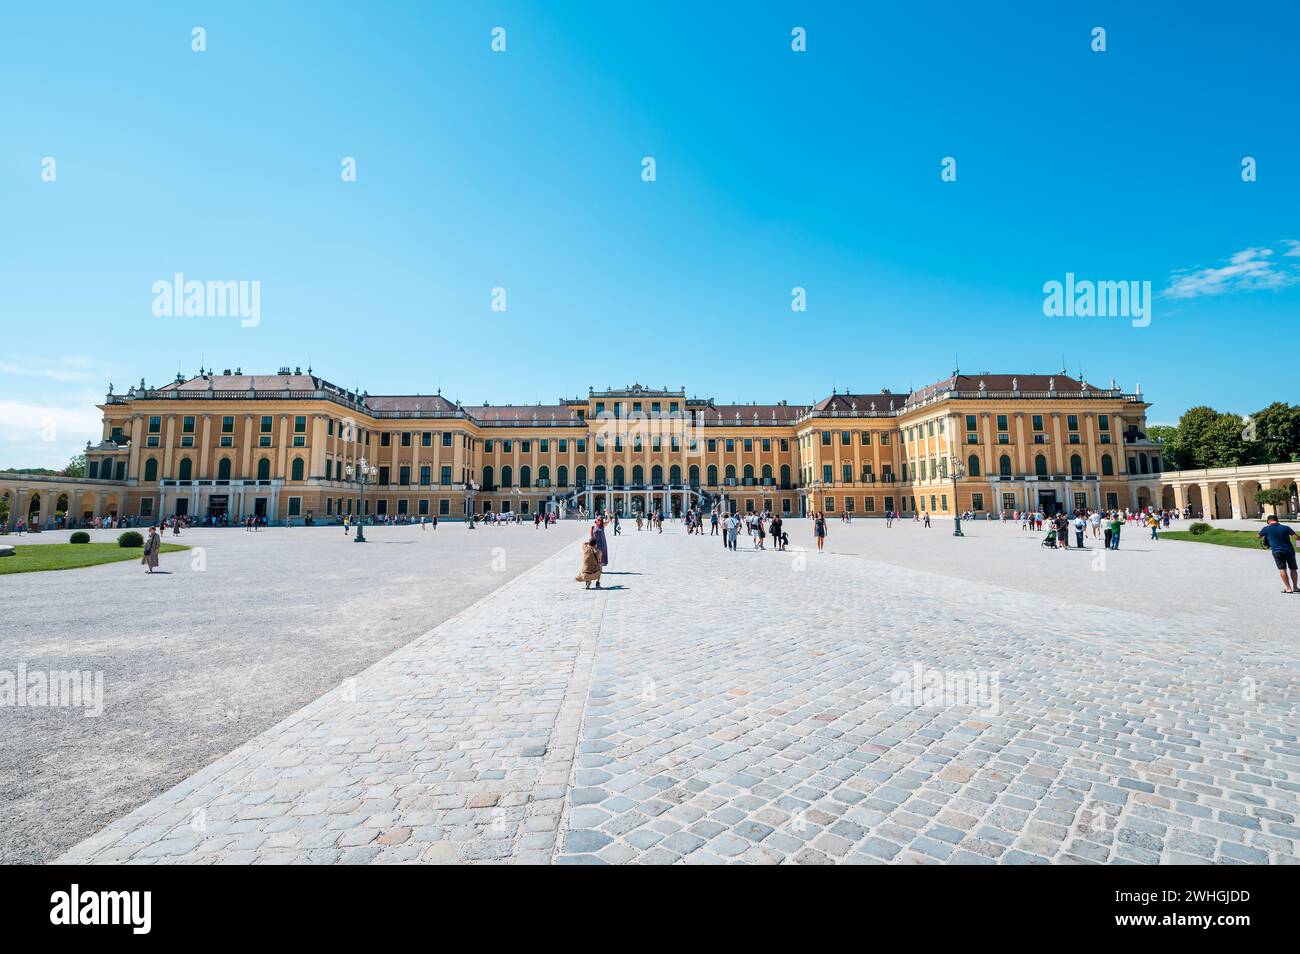 Vienne, Autriche - 12 août 2022 : le palais Schönbrunn de Vienne surplombe une place animée tandis que les gens se rassemblent sous le ciel d'été, admirant le gr Banque D'Images